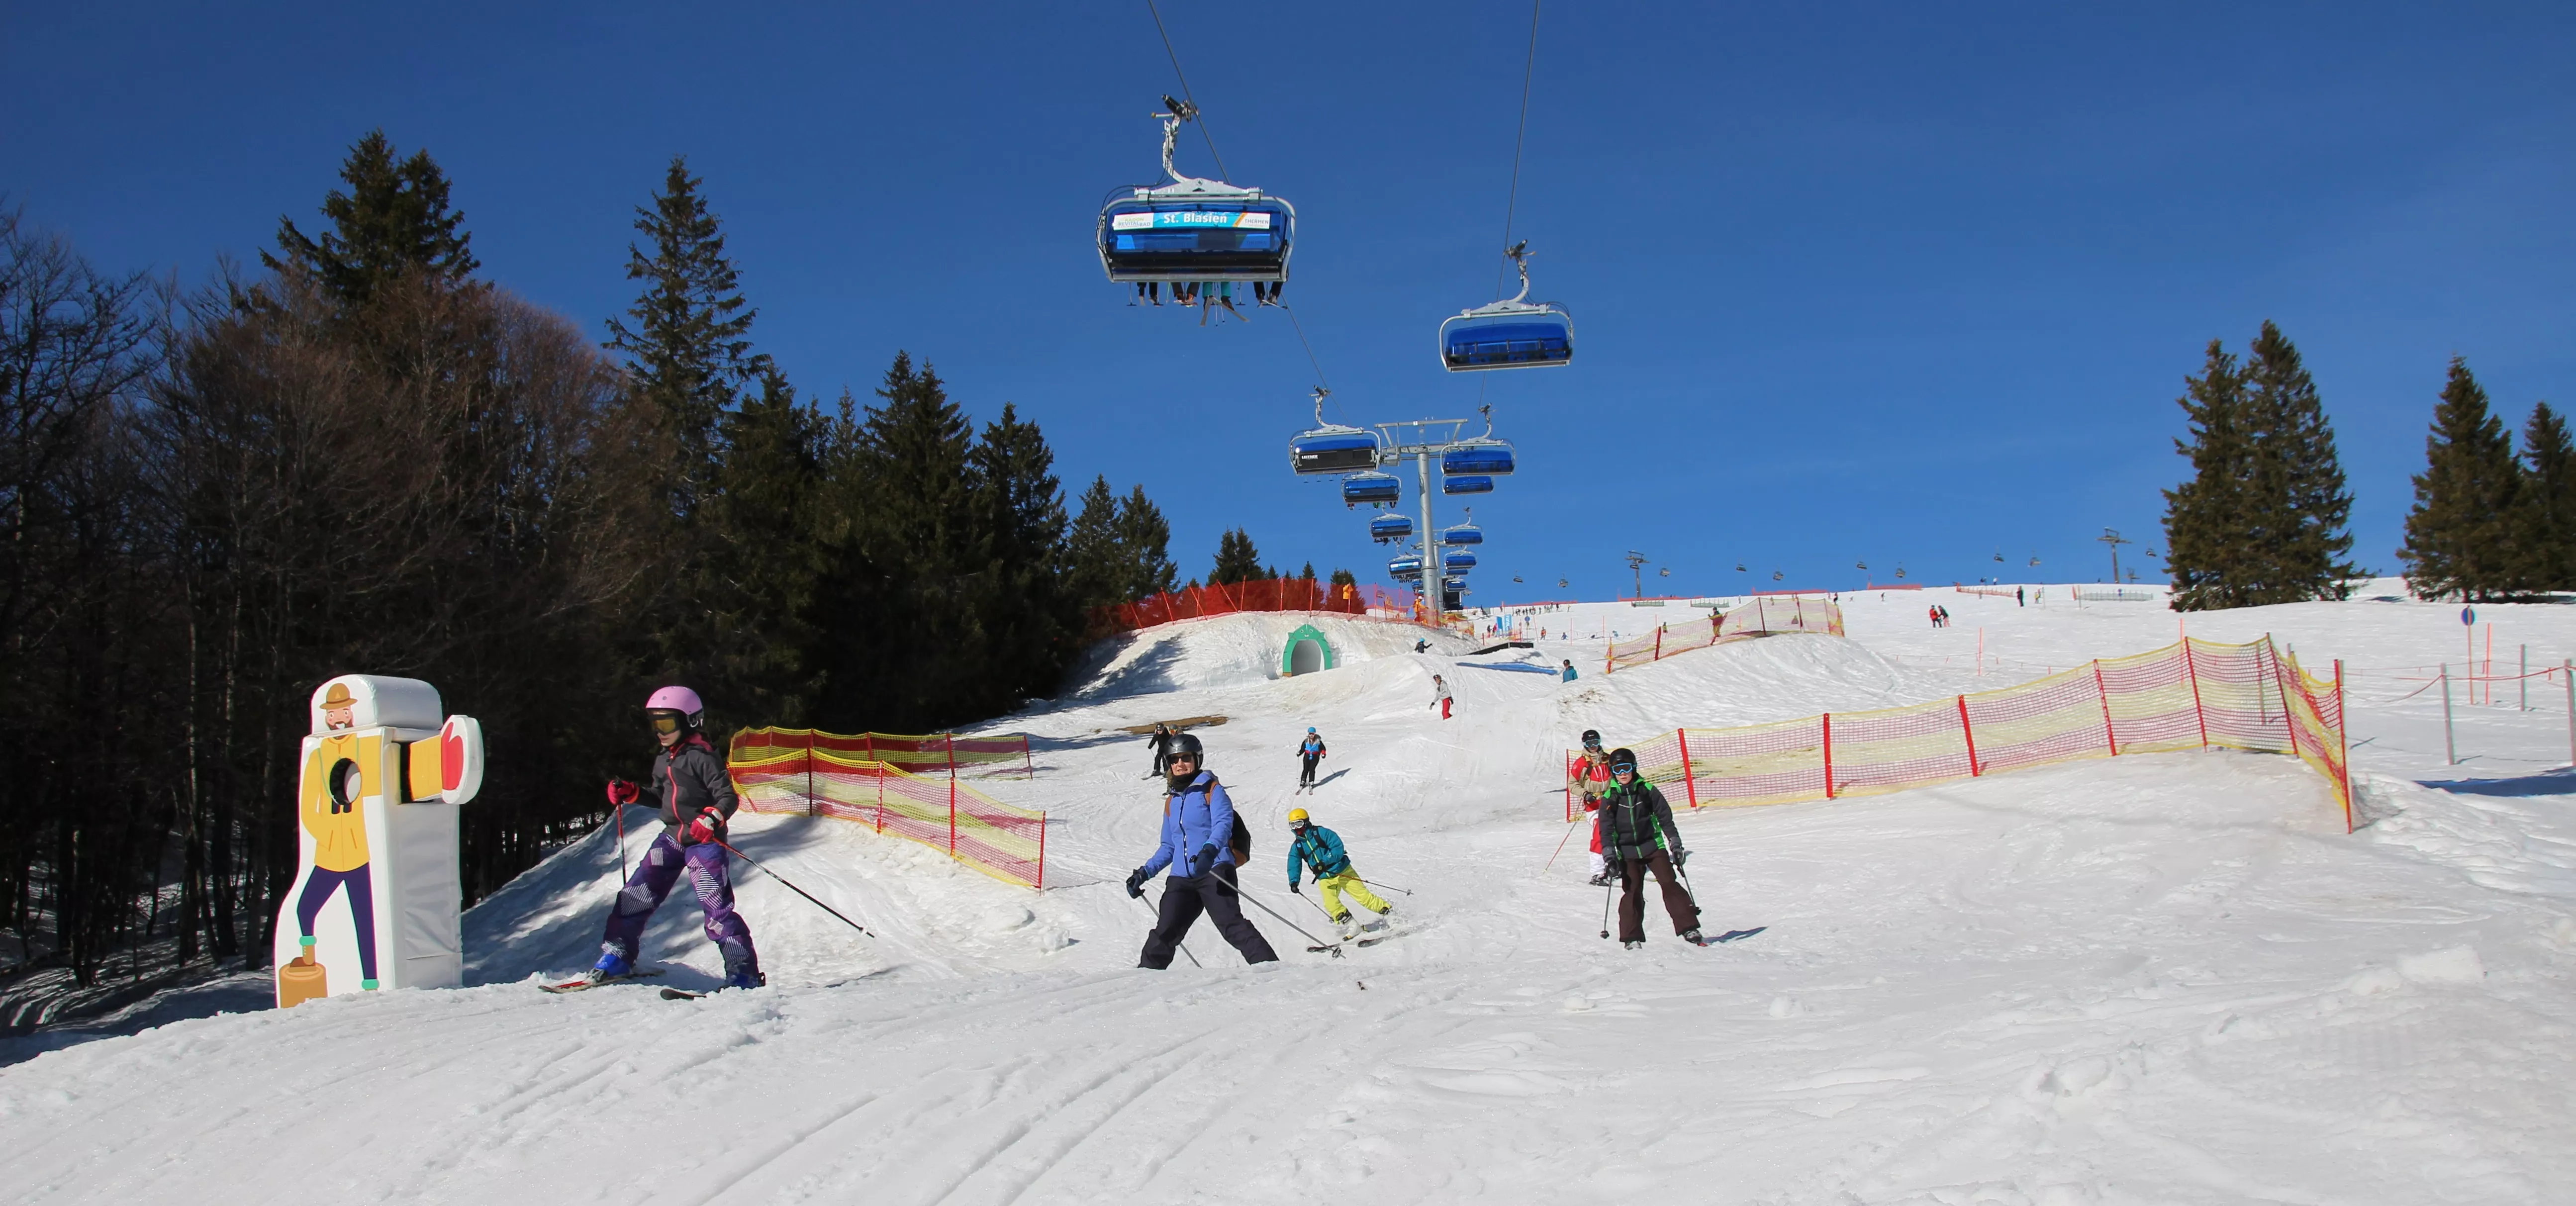 Liftverbund Feldberg in Germany, Europe | Snowboarding,Skiing - Rated 4.1